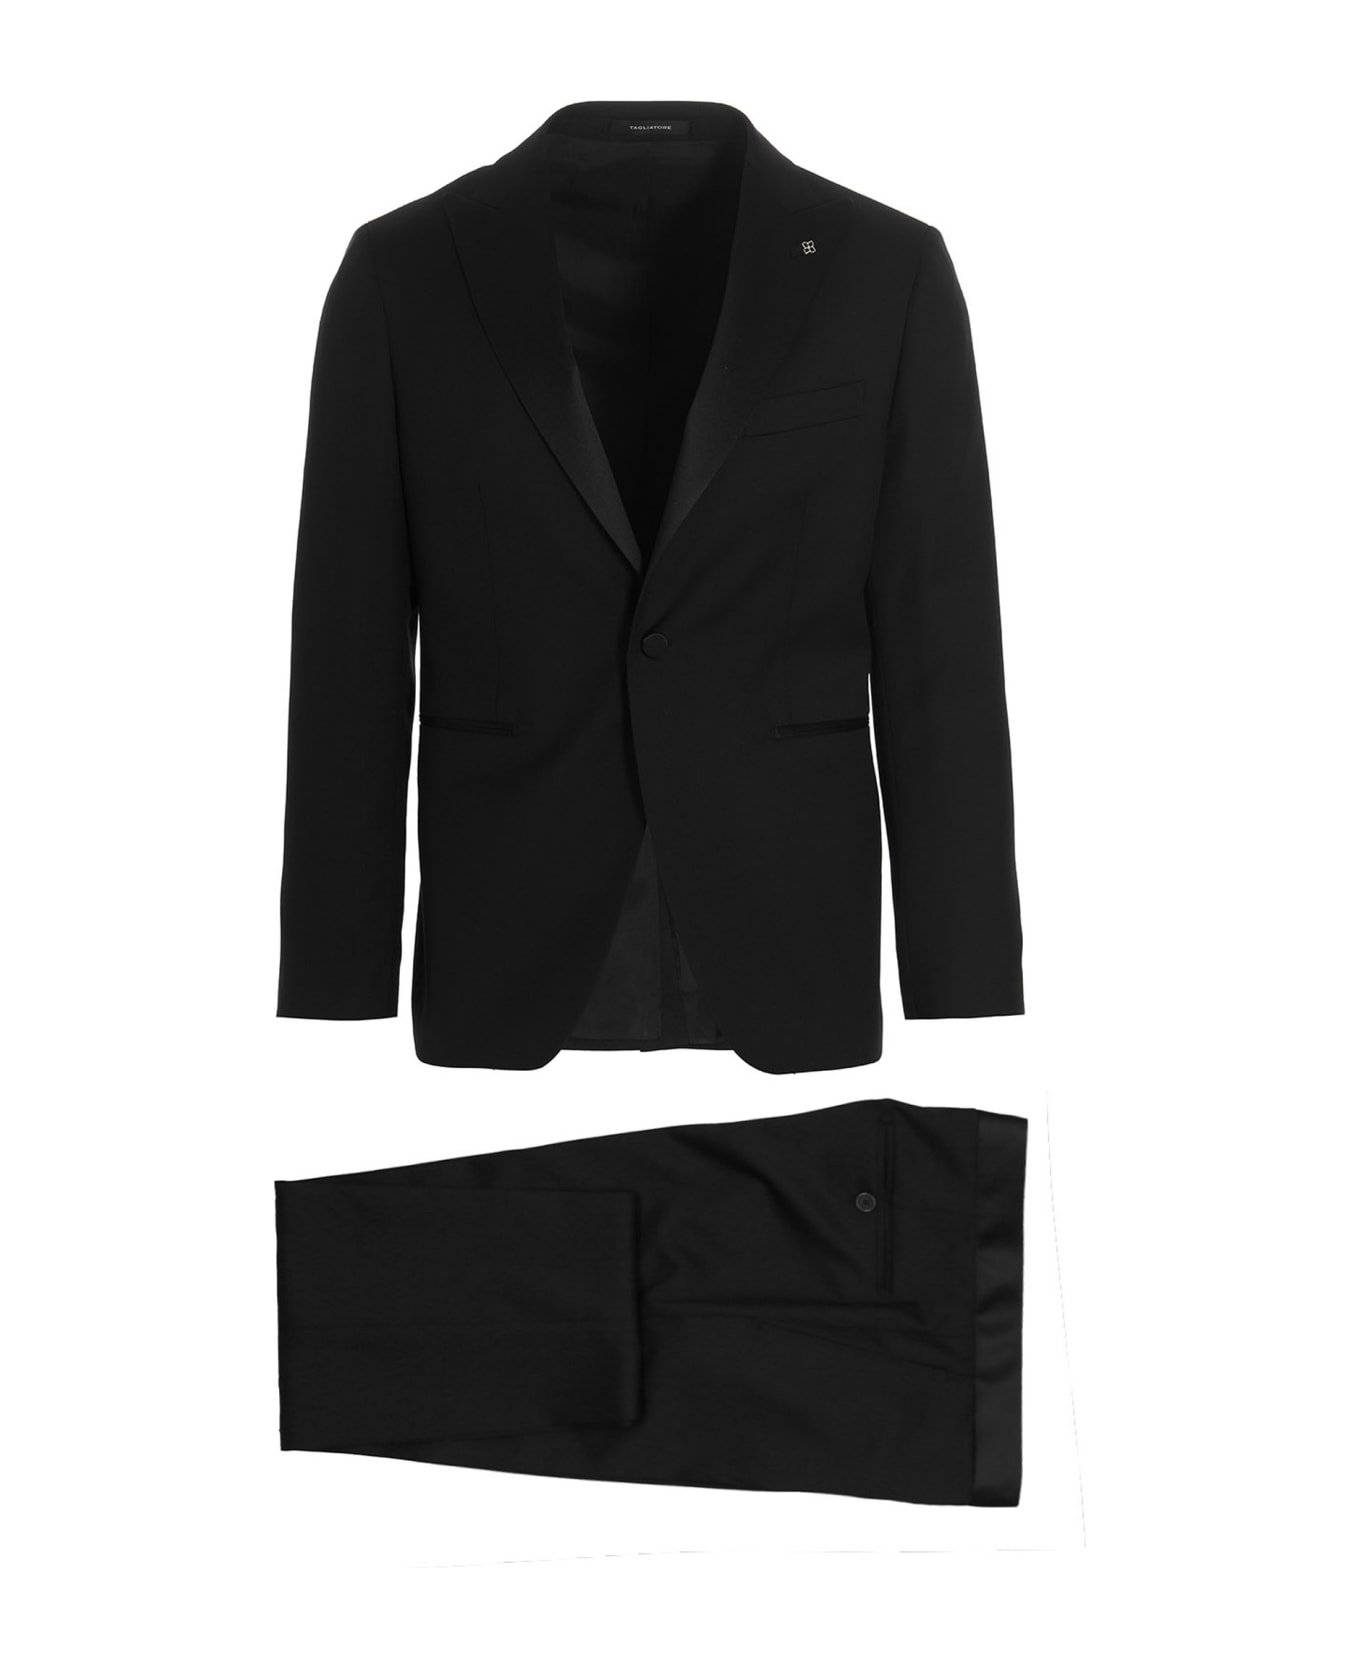 Tagliatore Tucked-up Dress - Black スーツ